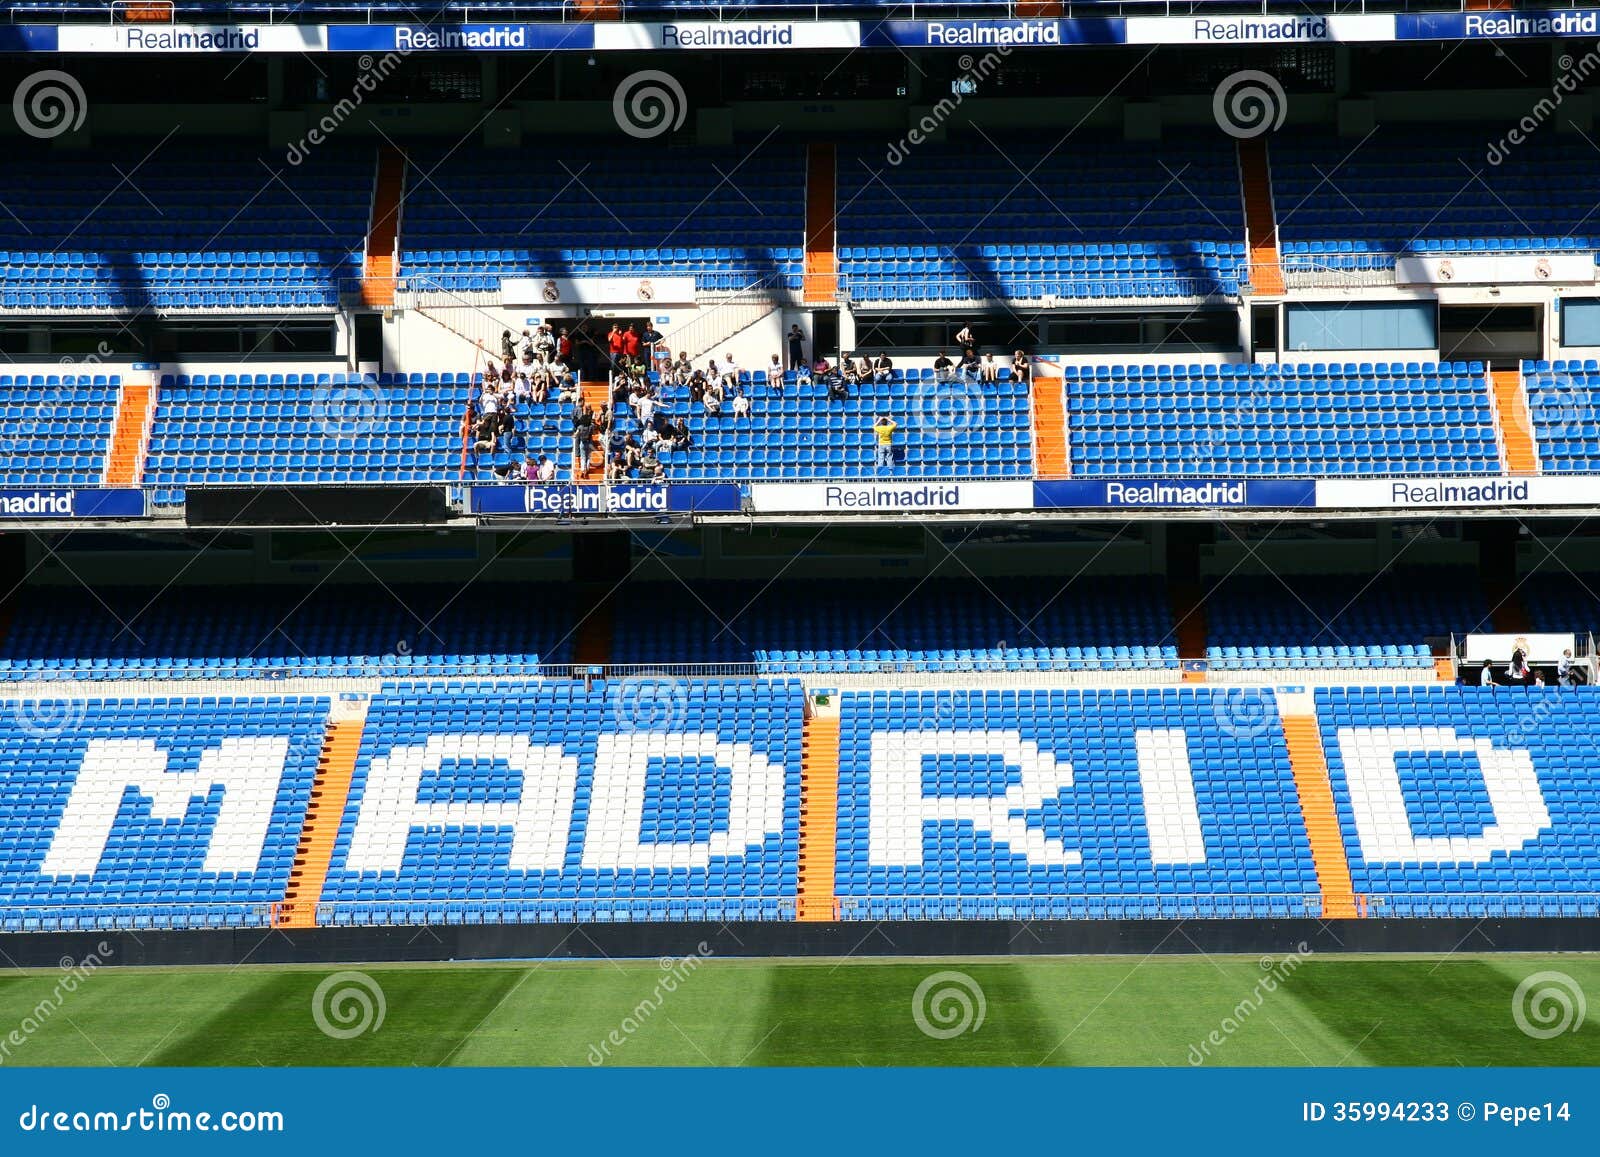 Stadion Van Real Madrid Redactionele Stock Foto Afbeelding 35994233